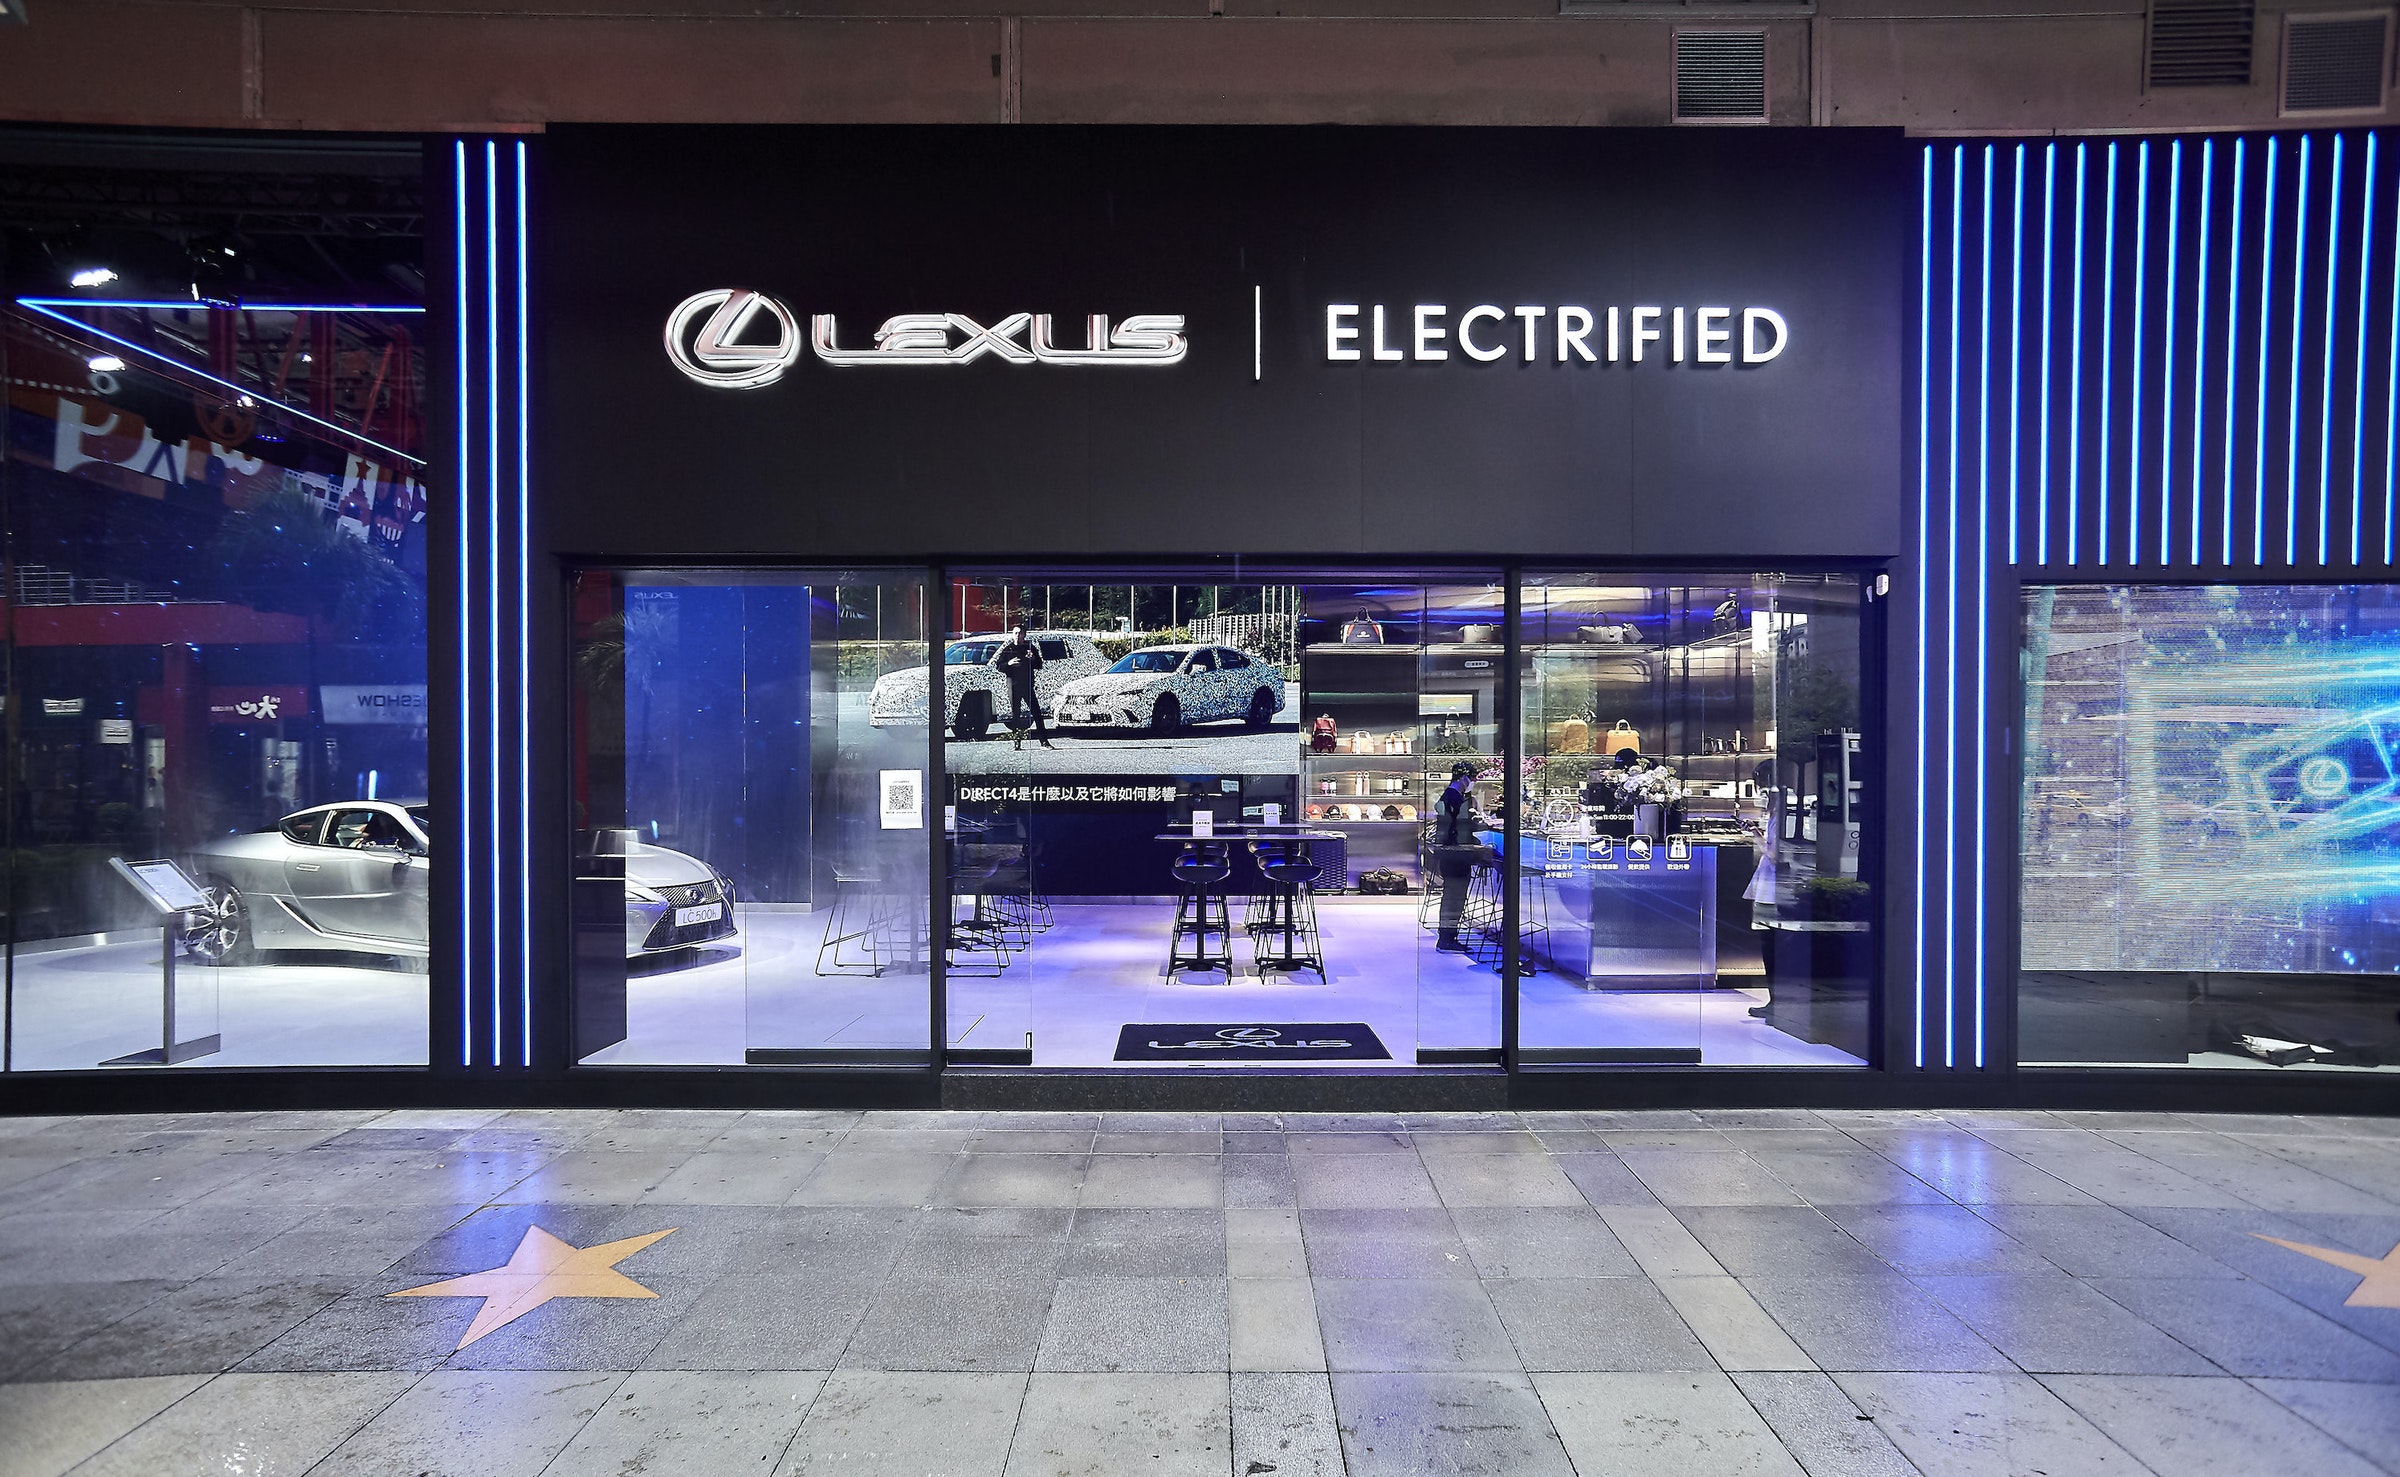 照片中提到了QLEXUS| ELECTRIFIED、EXTE、WOHEB，跟雷克薩斯有關，包含了顯示裝置、顯示裝置、數碼展示廣告、展示窗、汽車代理商